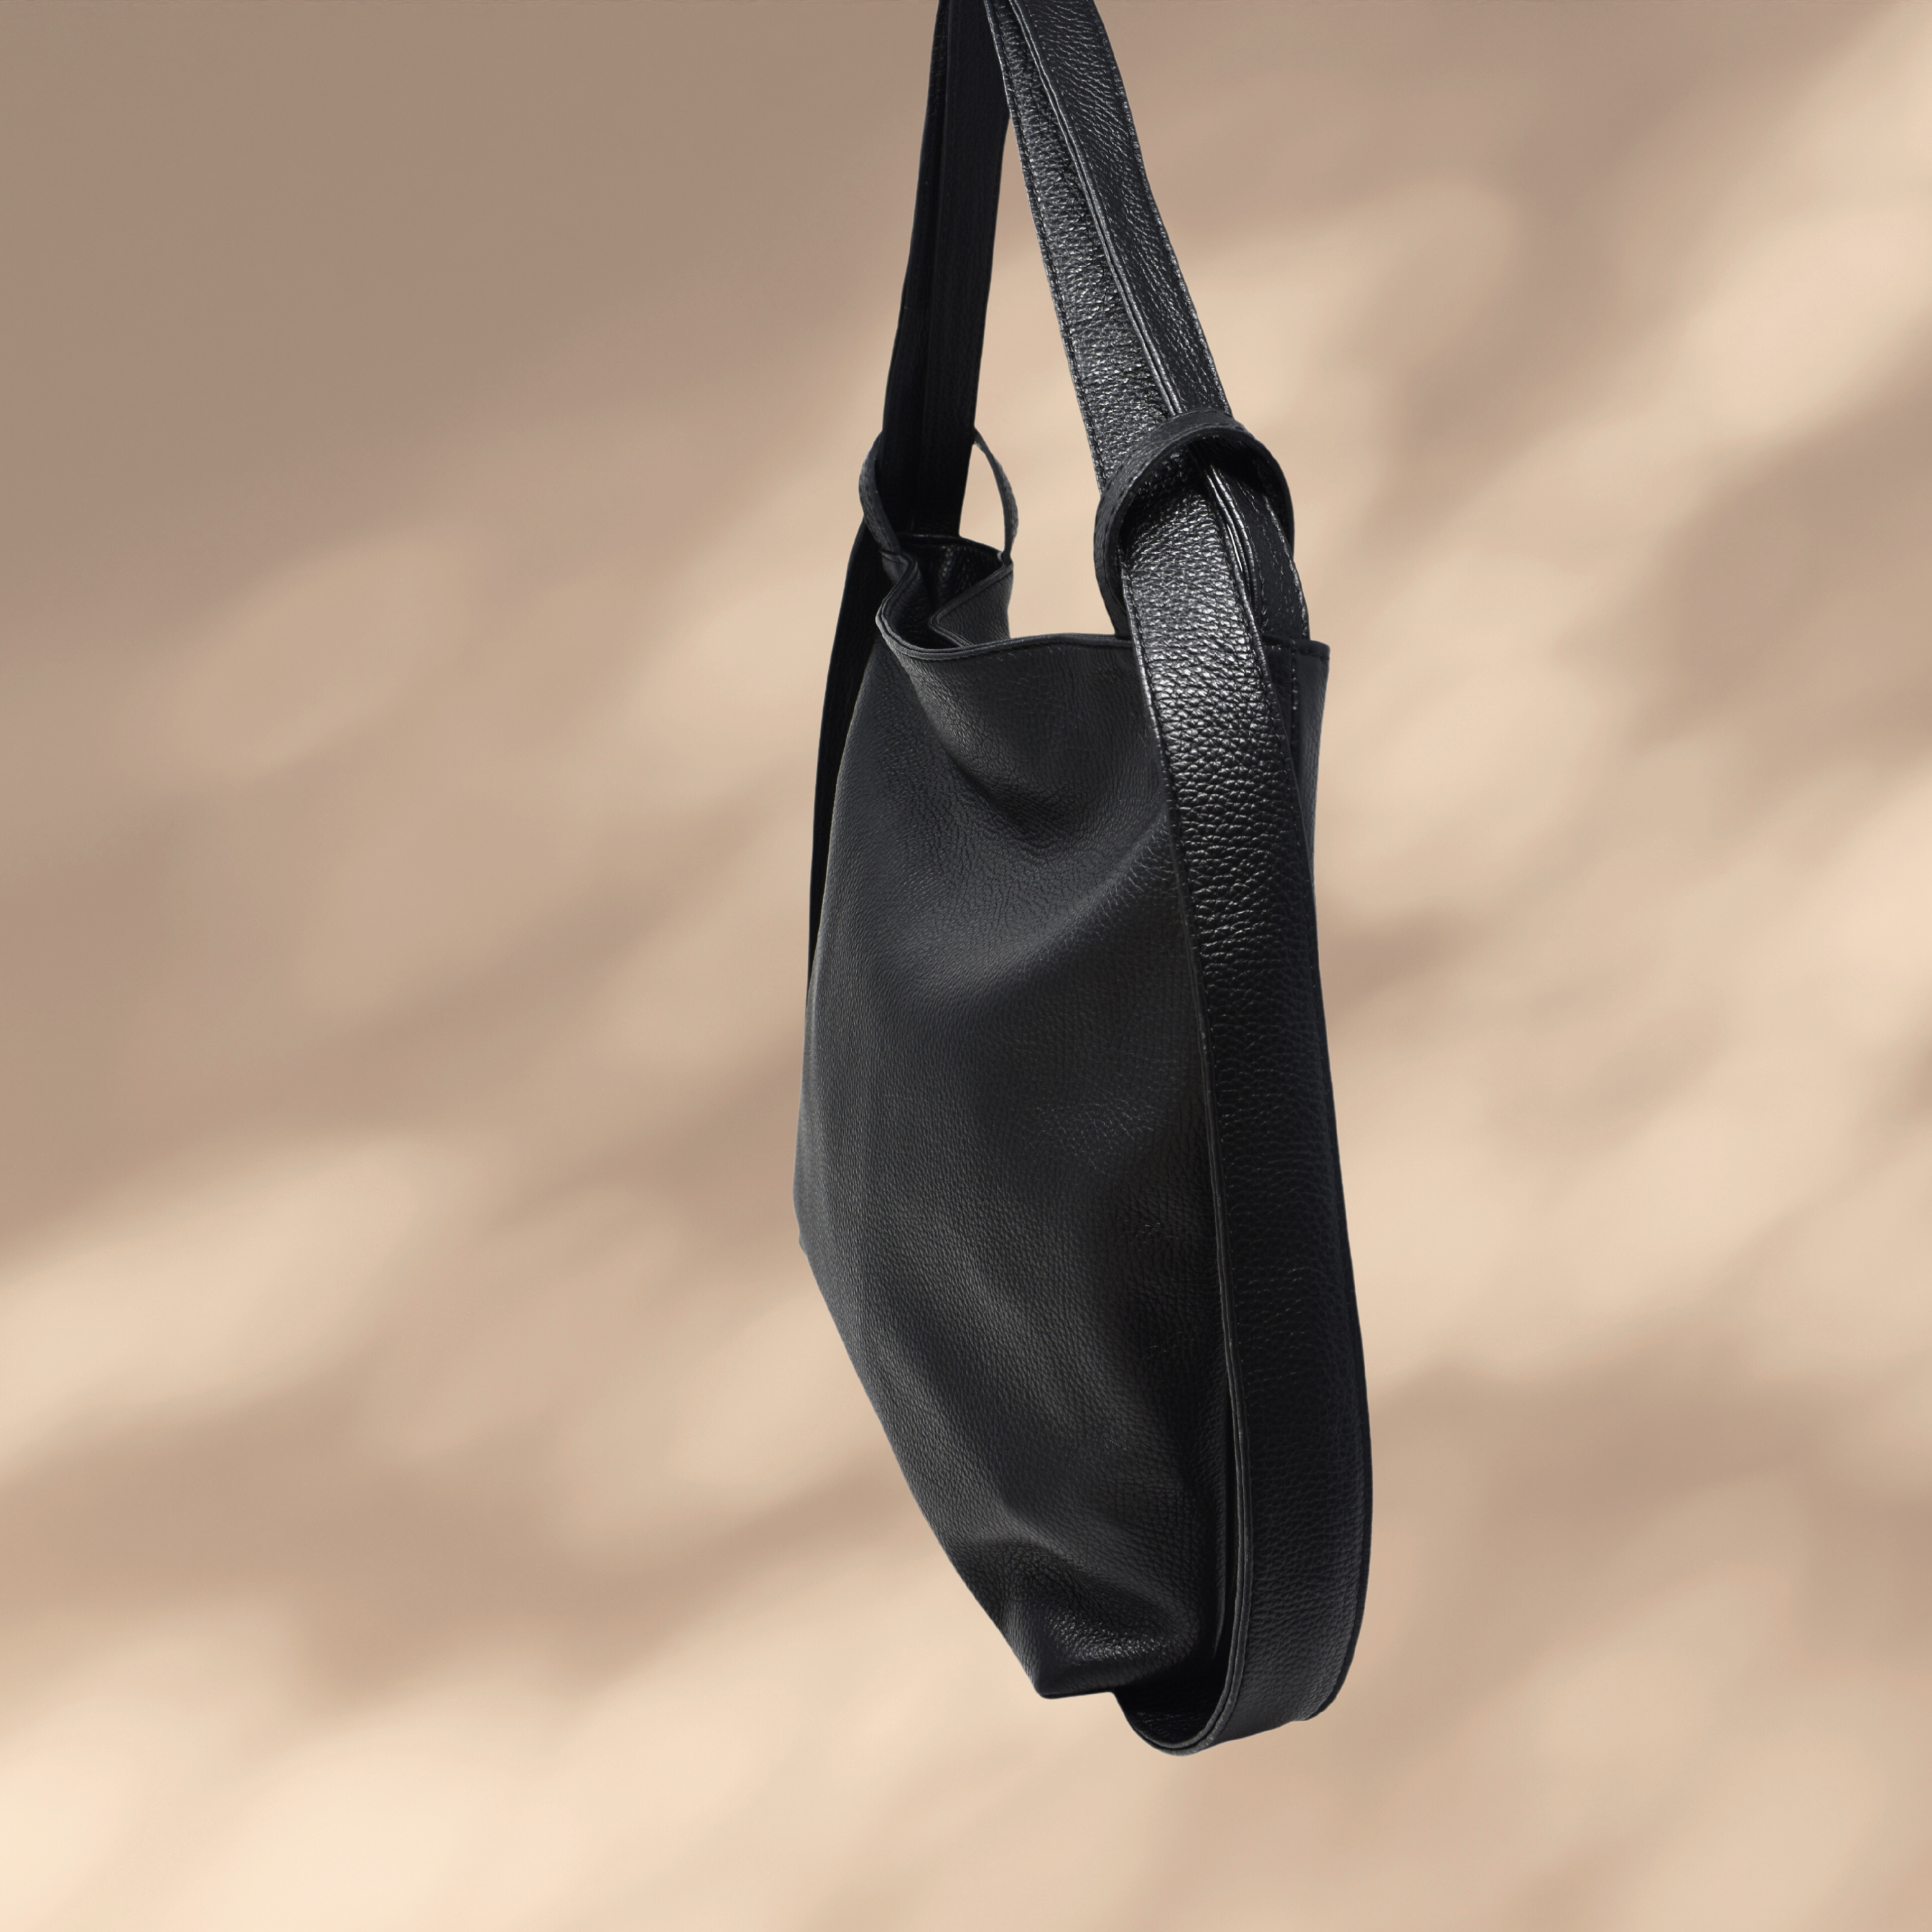 The Crossbody Bag Strap – Luken + Co